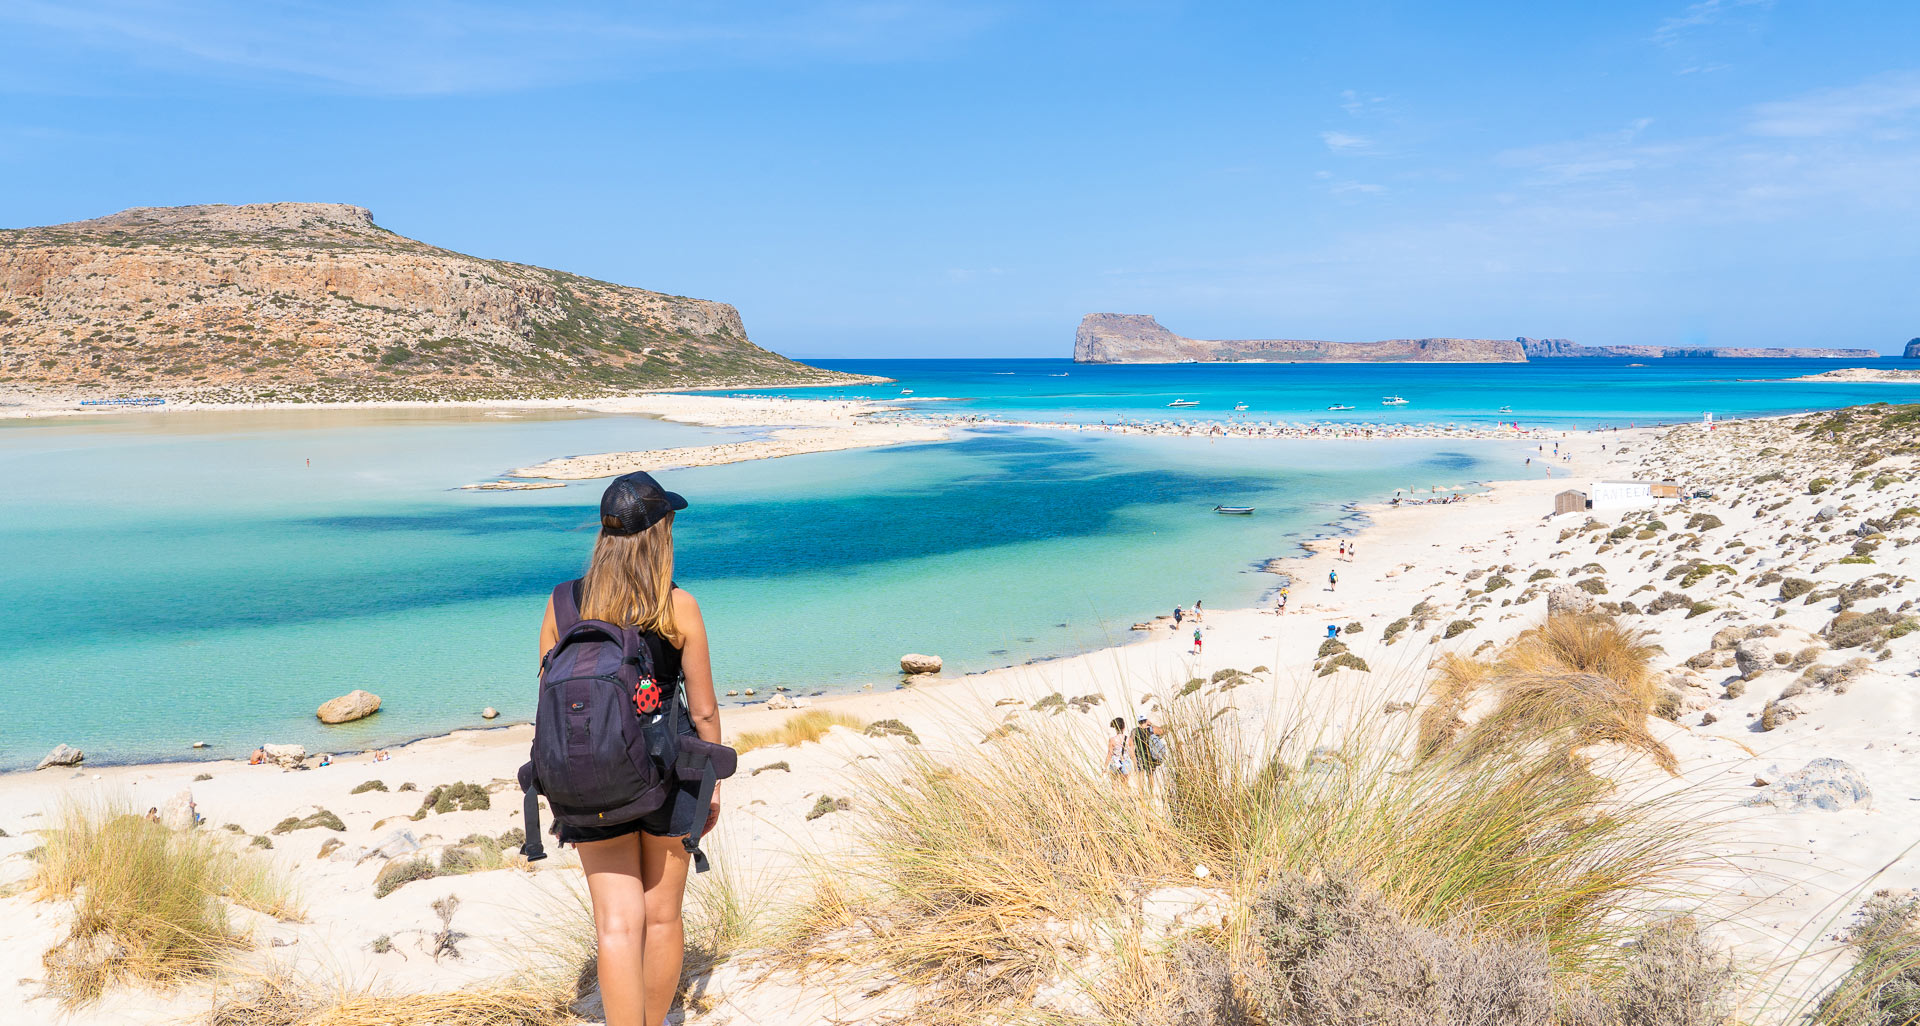 Balos beach - a week in Crete itinerary